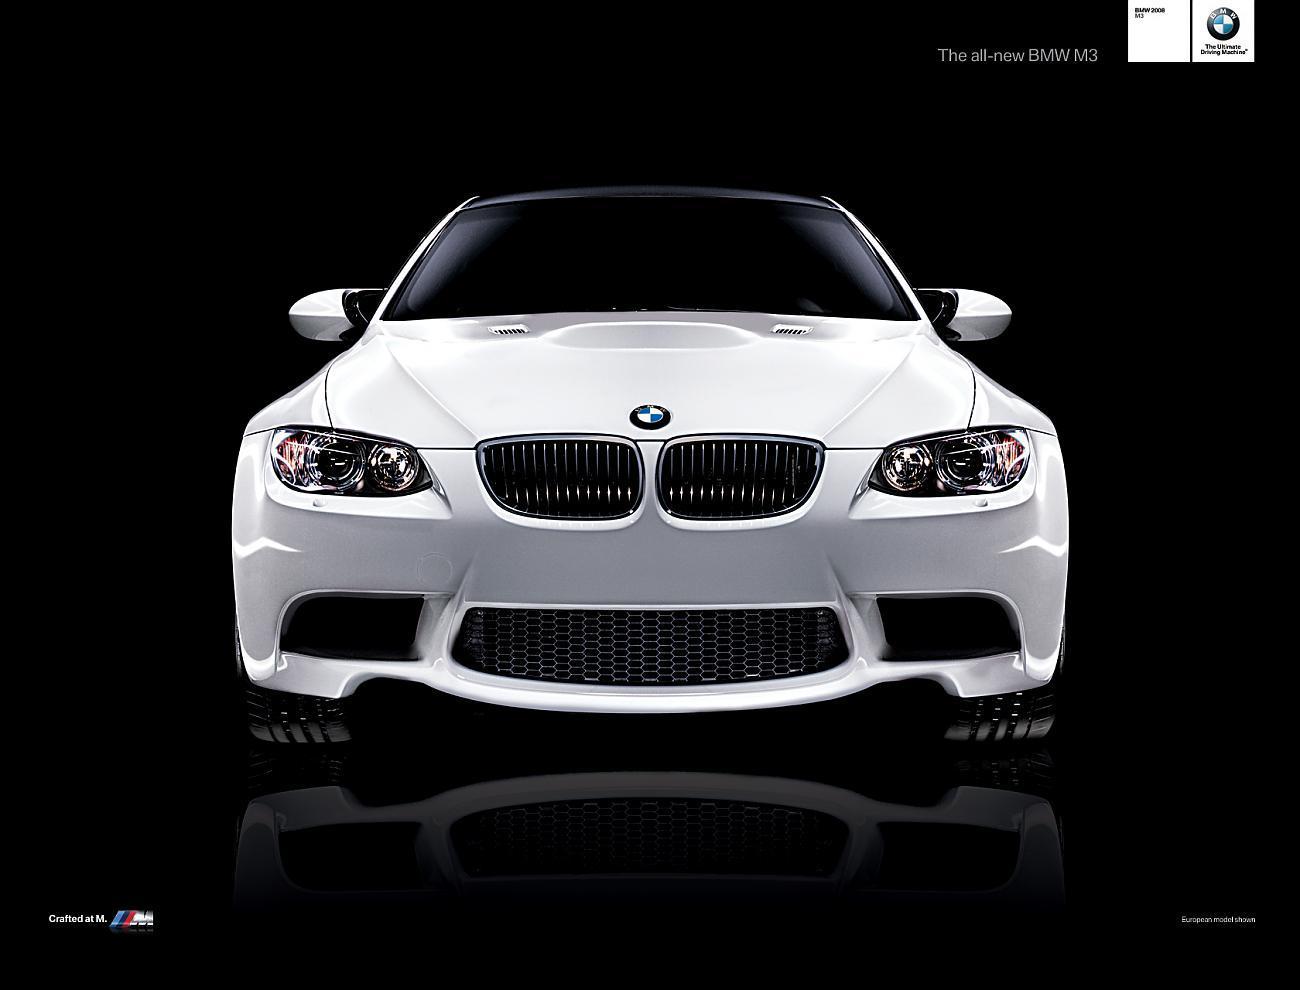 BMW M3 wallpaper. BMW M3 wallpaper